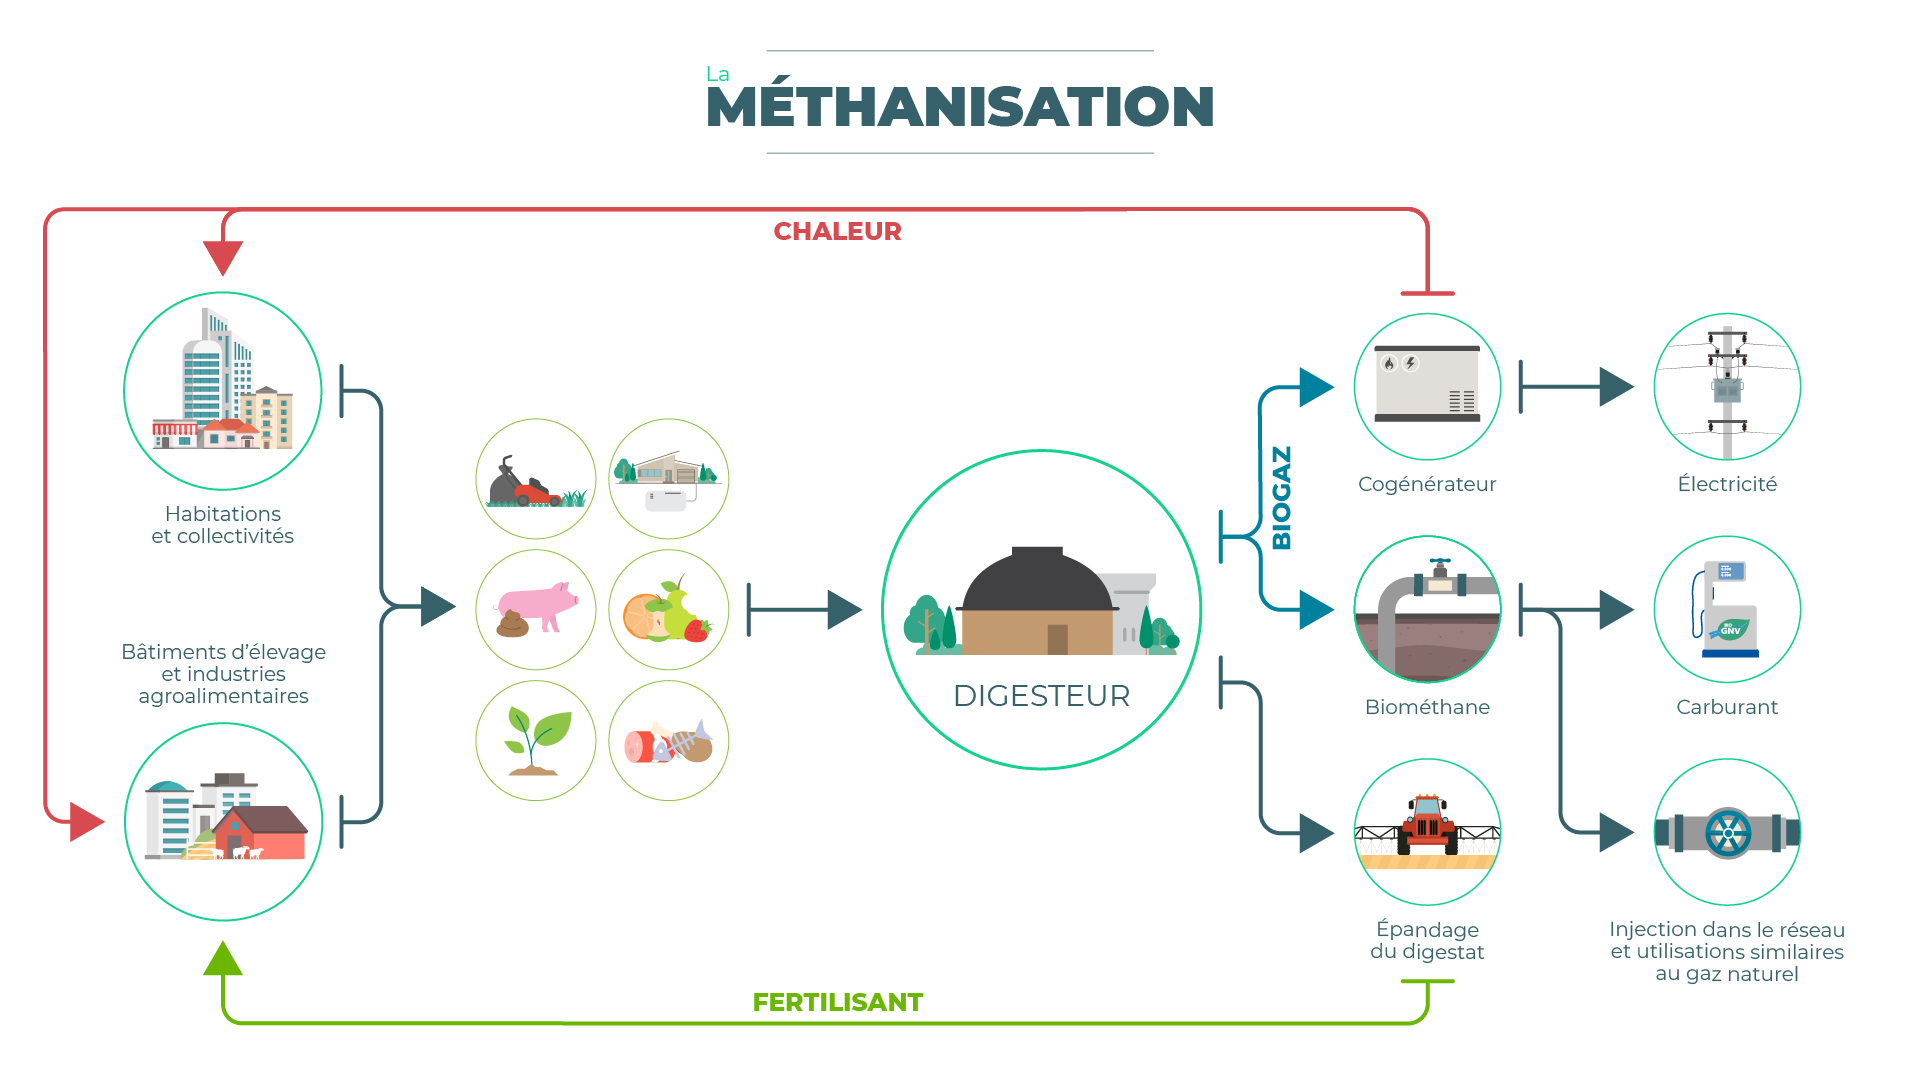 schéma des flux et des étapes du procédé de méthanisation, depuis les lieux de production des intrants jusqu'à la valorisation énergétique